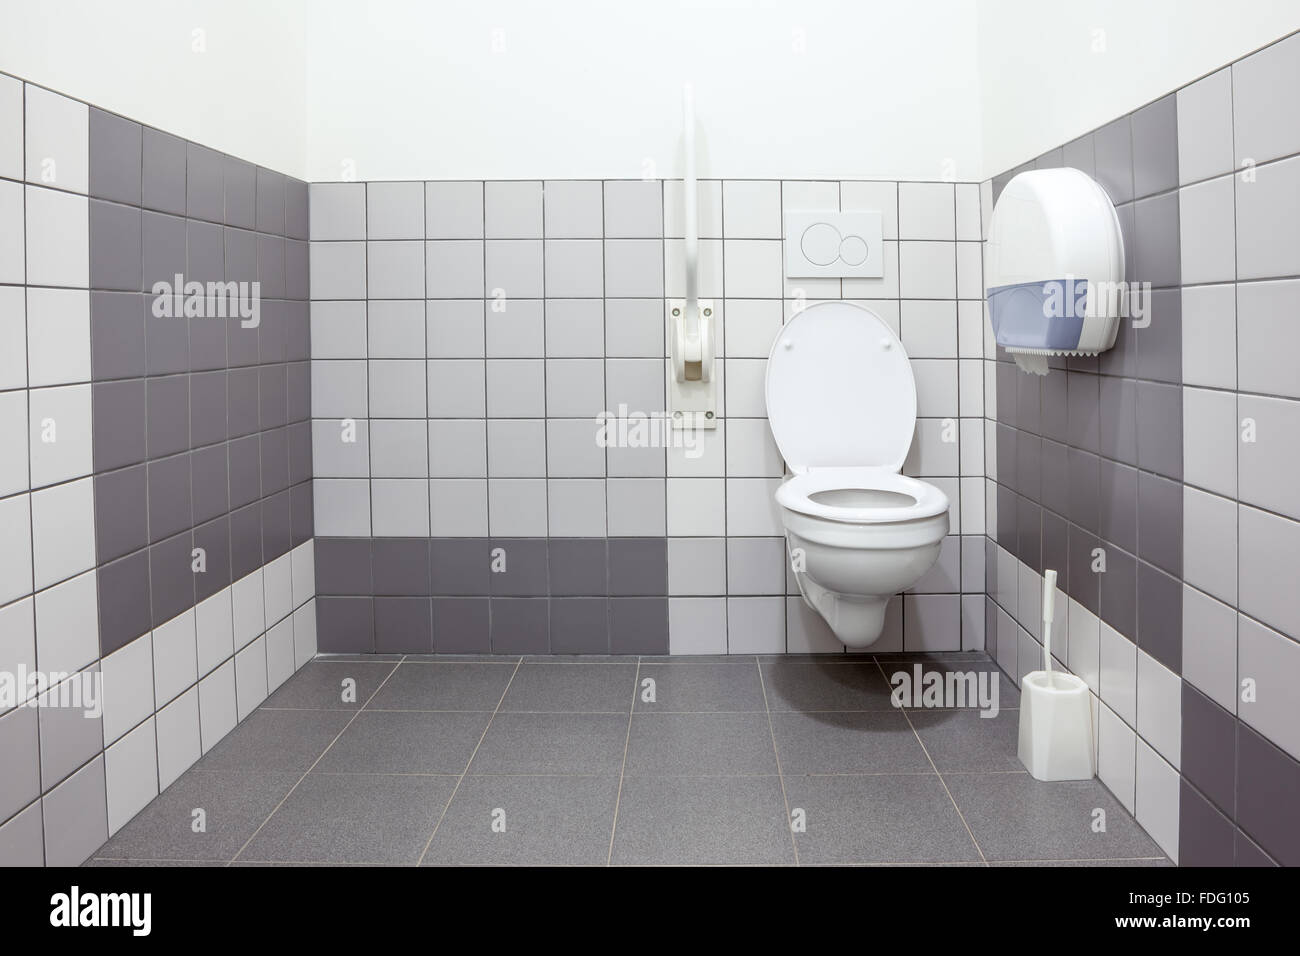 Pubblico bagno per disabili in un edificio di grandi dimensioni Foto Stock